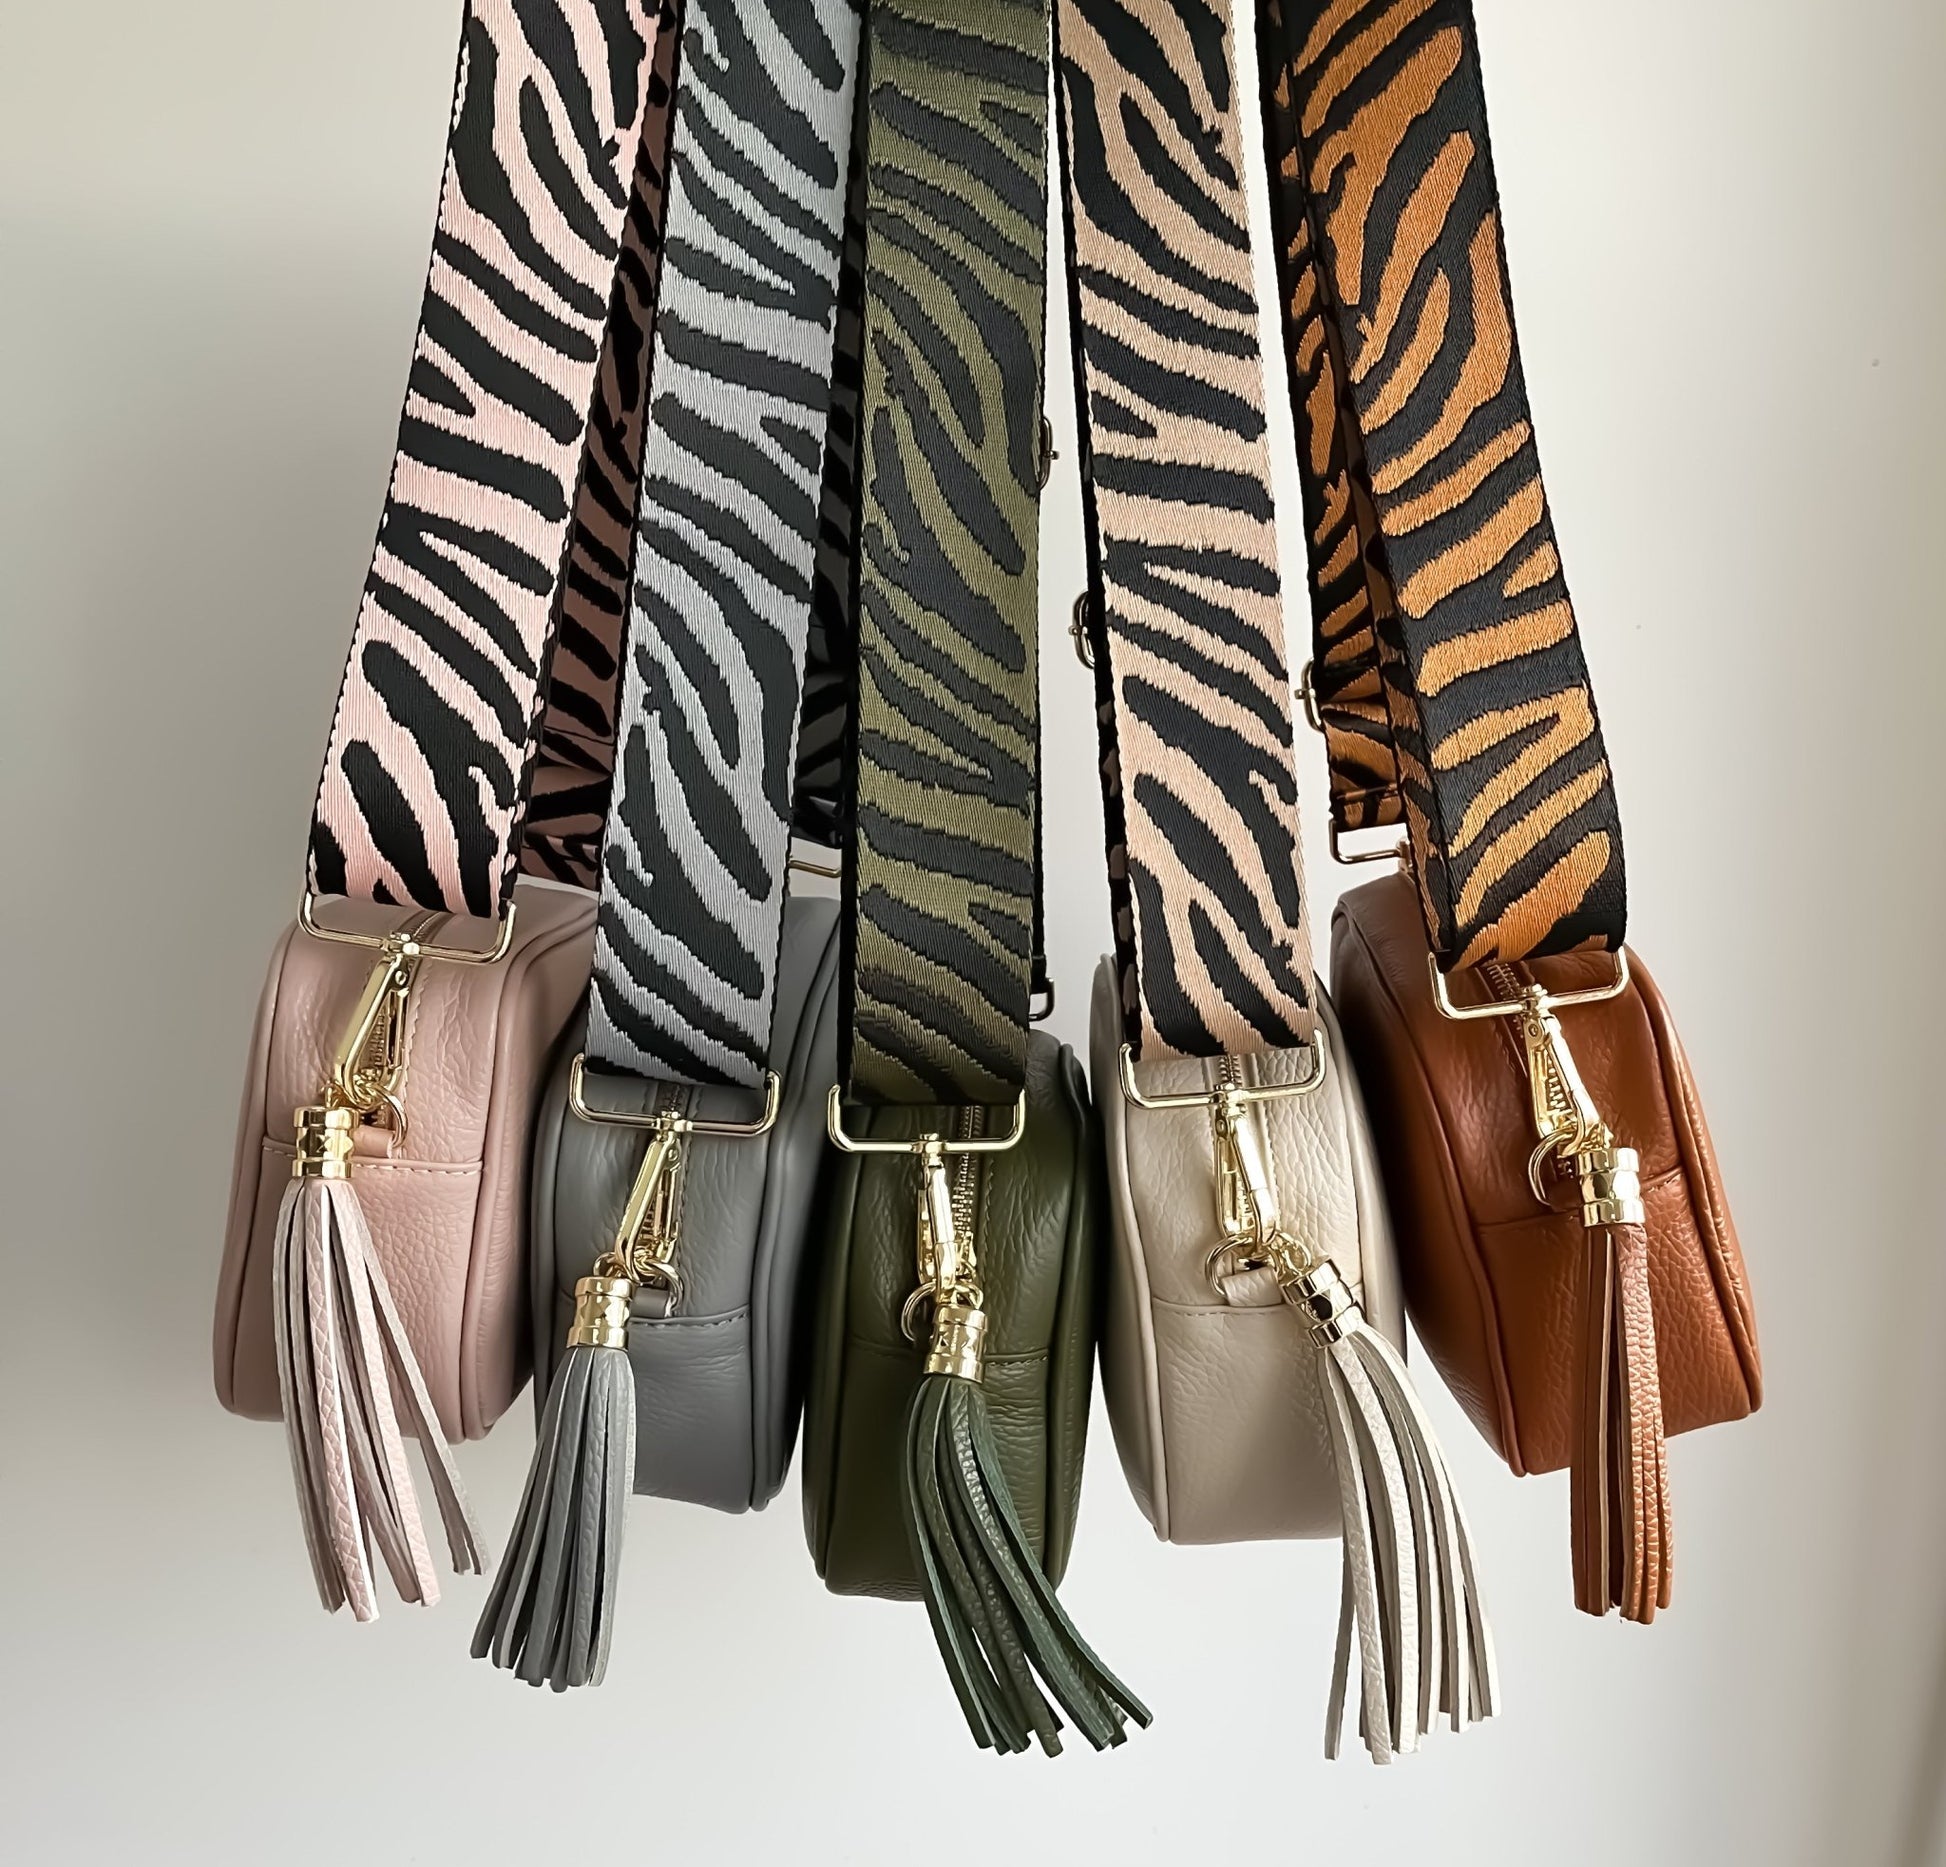 Zebra Print Stylish Bag Straps - OLIVIA AND GRAY LTD